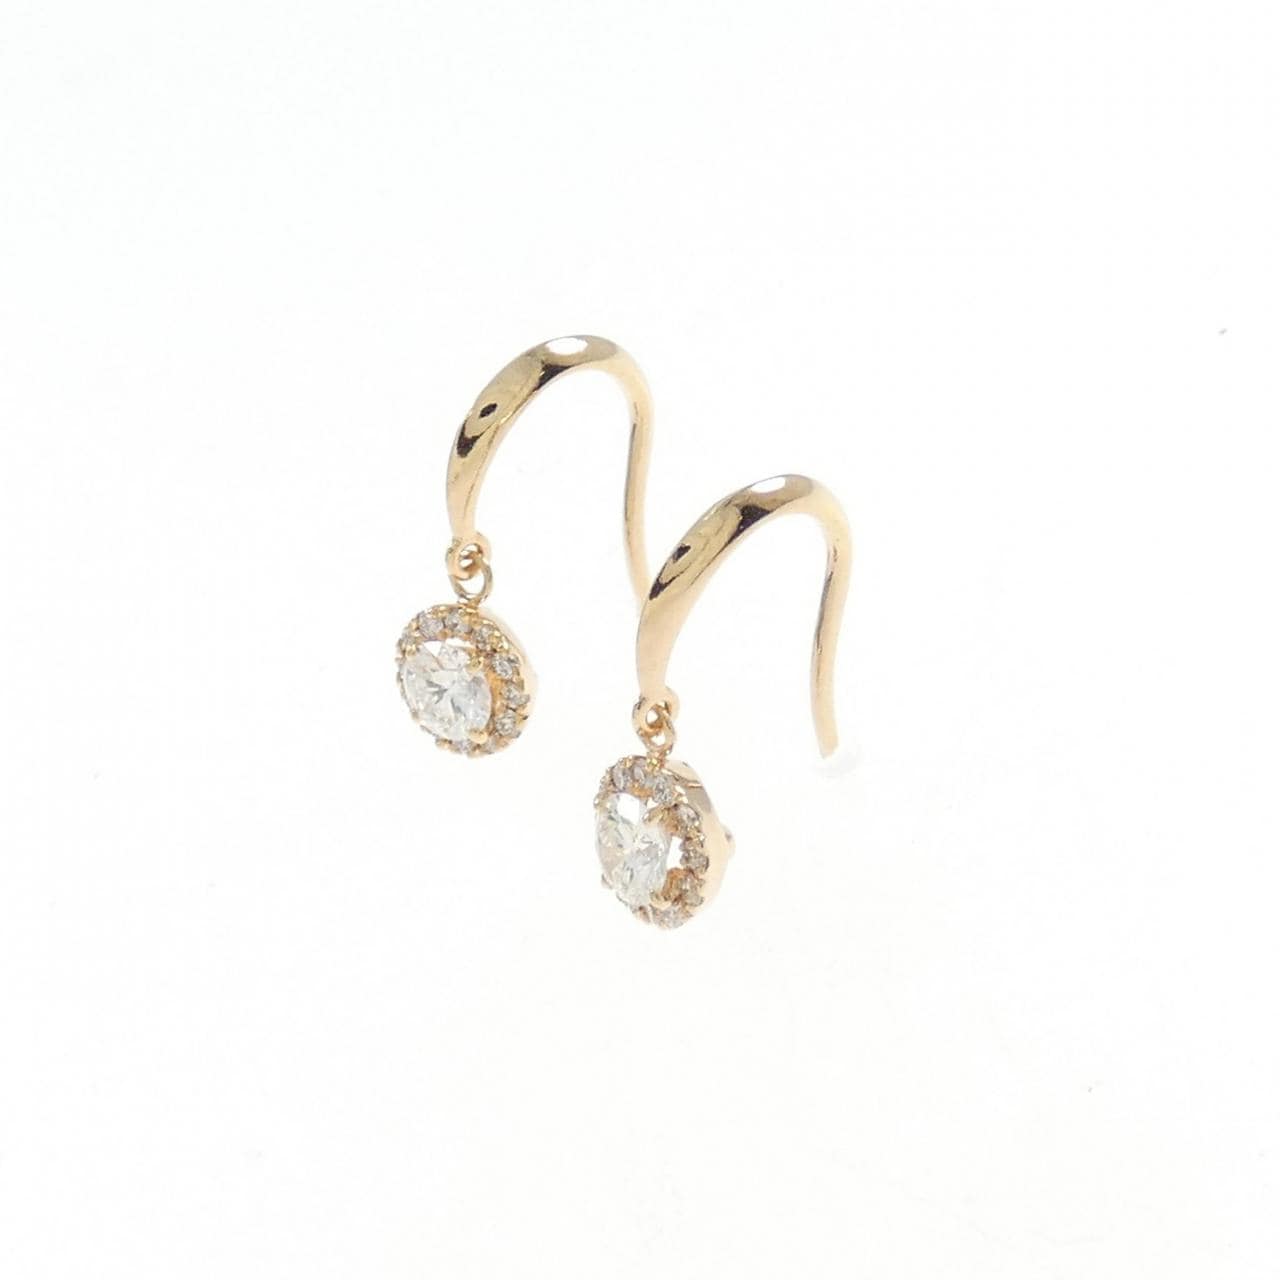 K18PG Diamond earrings 0.503CT